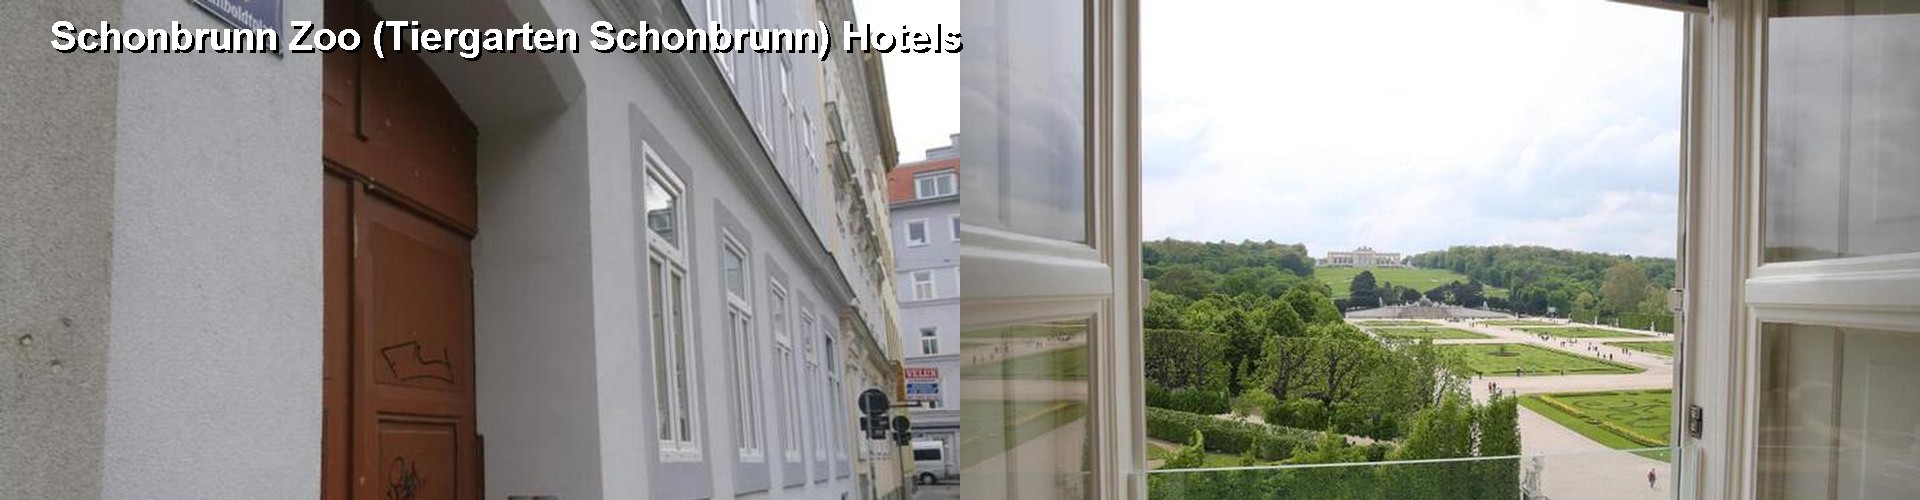 5 Best Hotels near Schonbrunn Zoo (Tiergarten Schonbrunn)